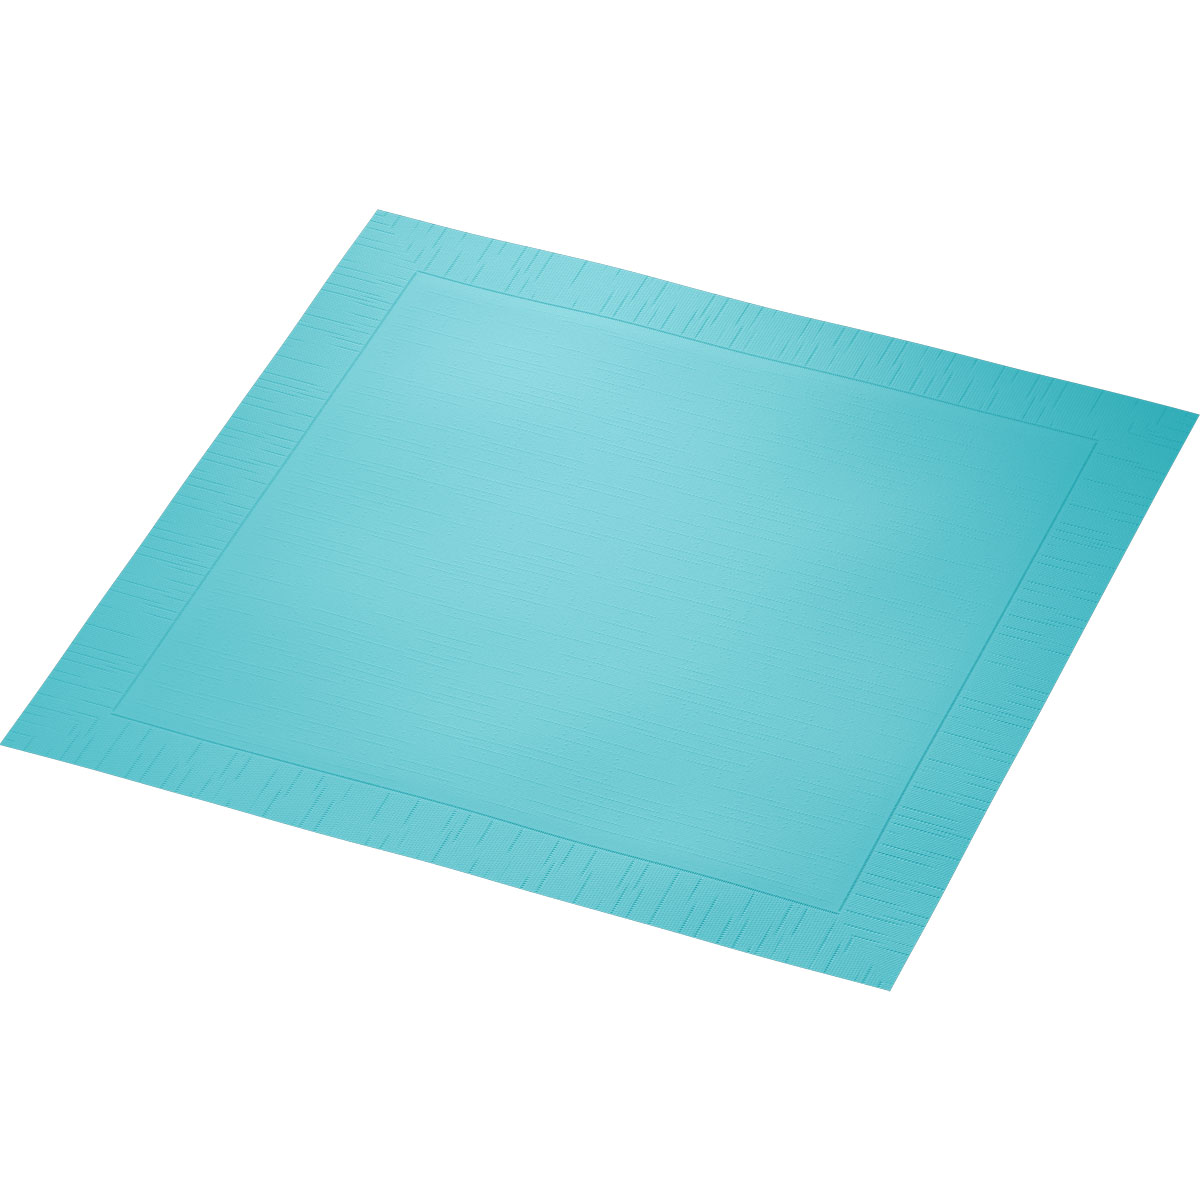 Duni Klassikservietten 40 x 40 cm 4-lagig, geprägt 1/4 Falz mint blue